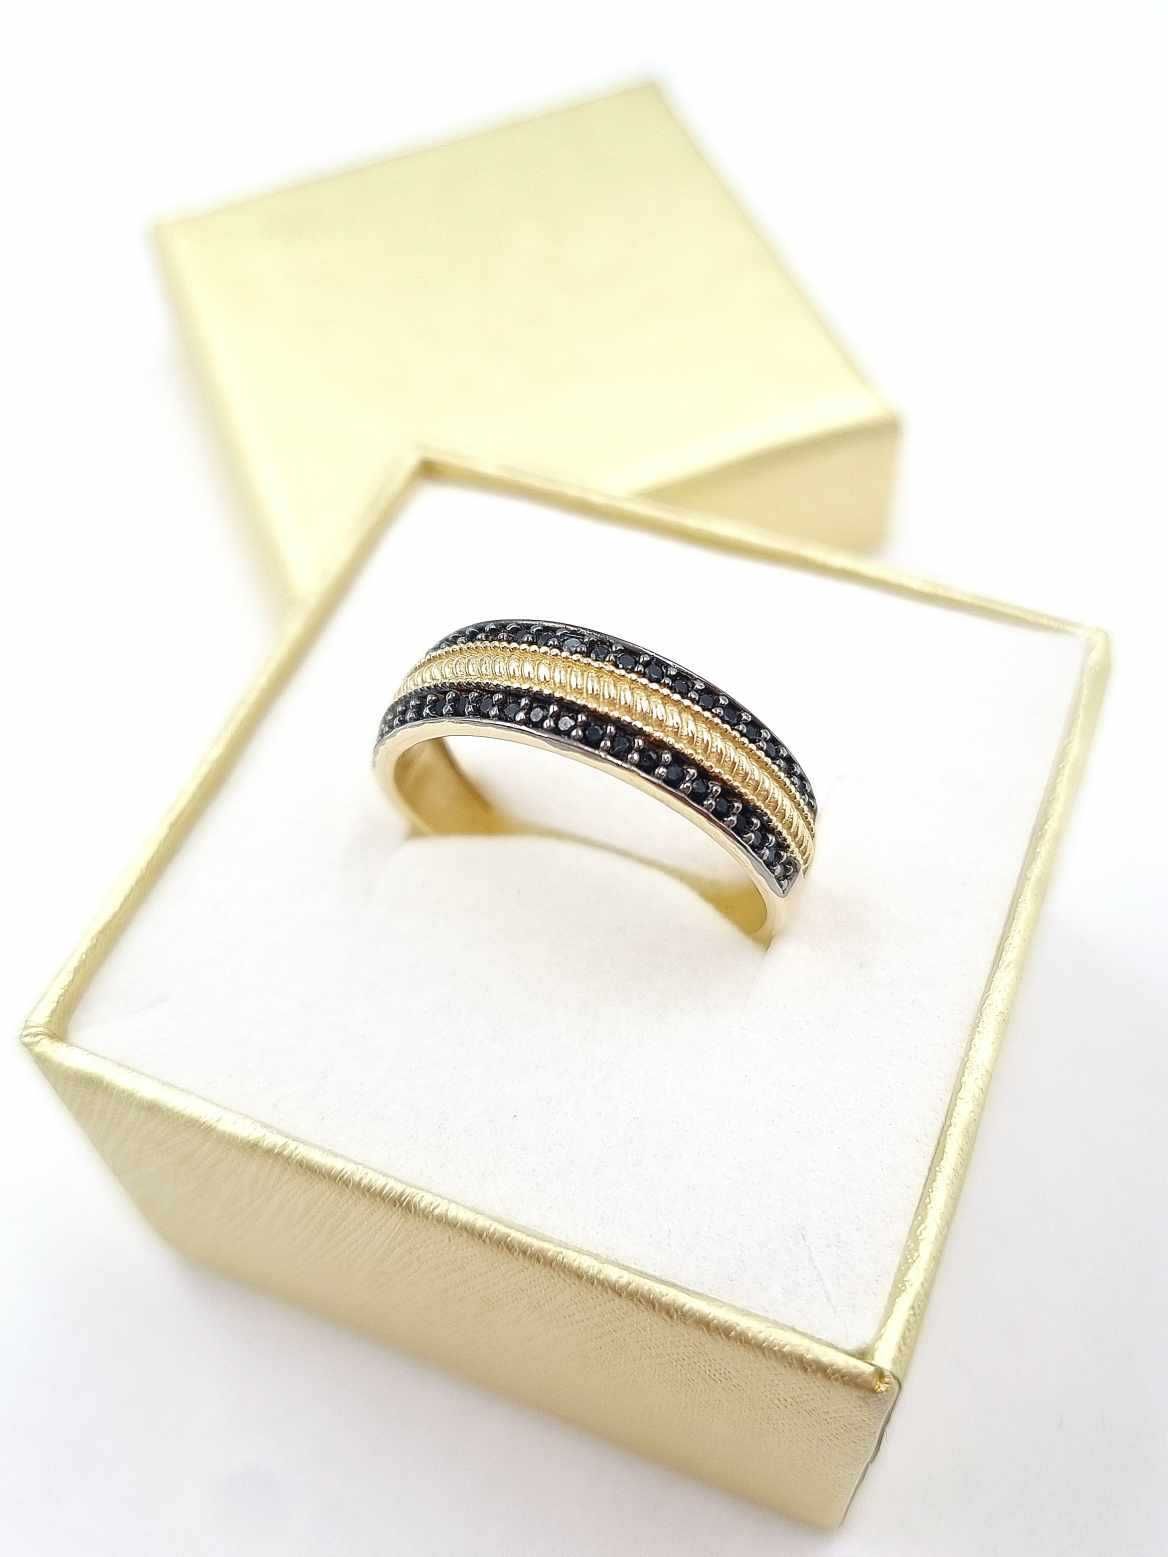 NOWY! Stylowy złoty pierścionek 585 r. 19 z czarnymi cyrkoniami